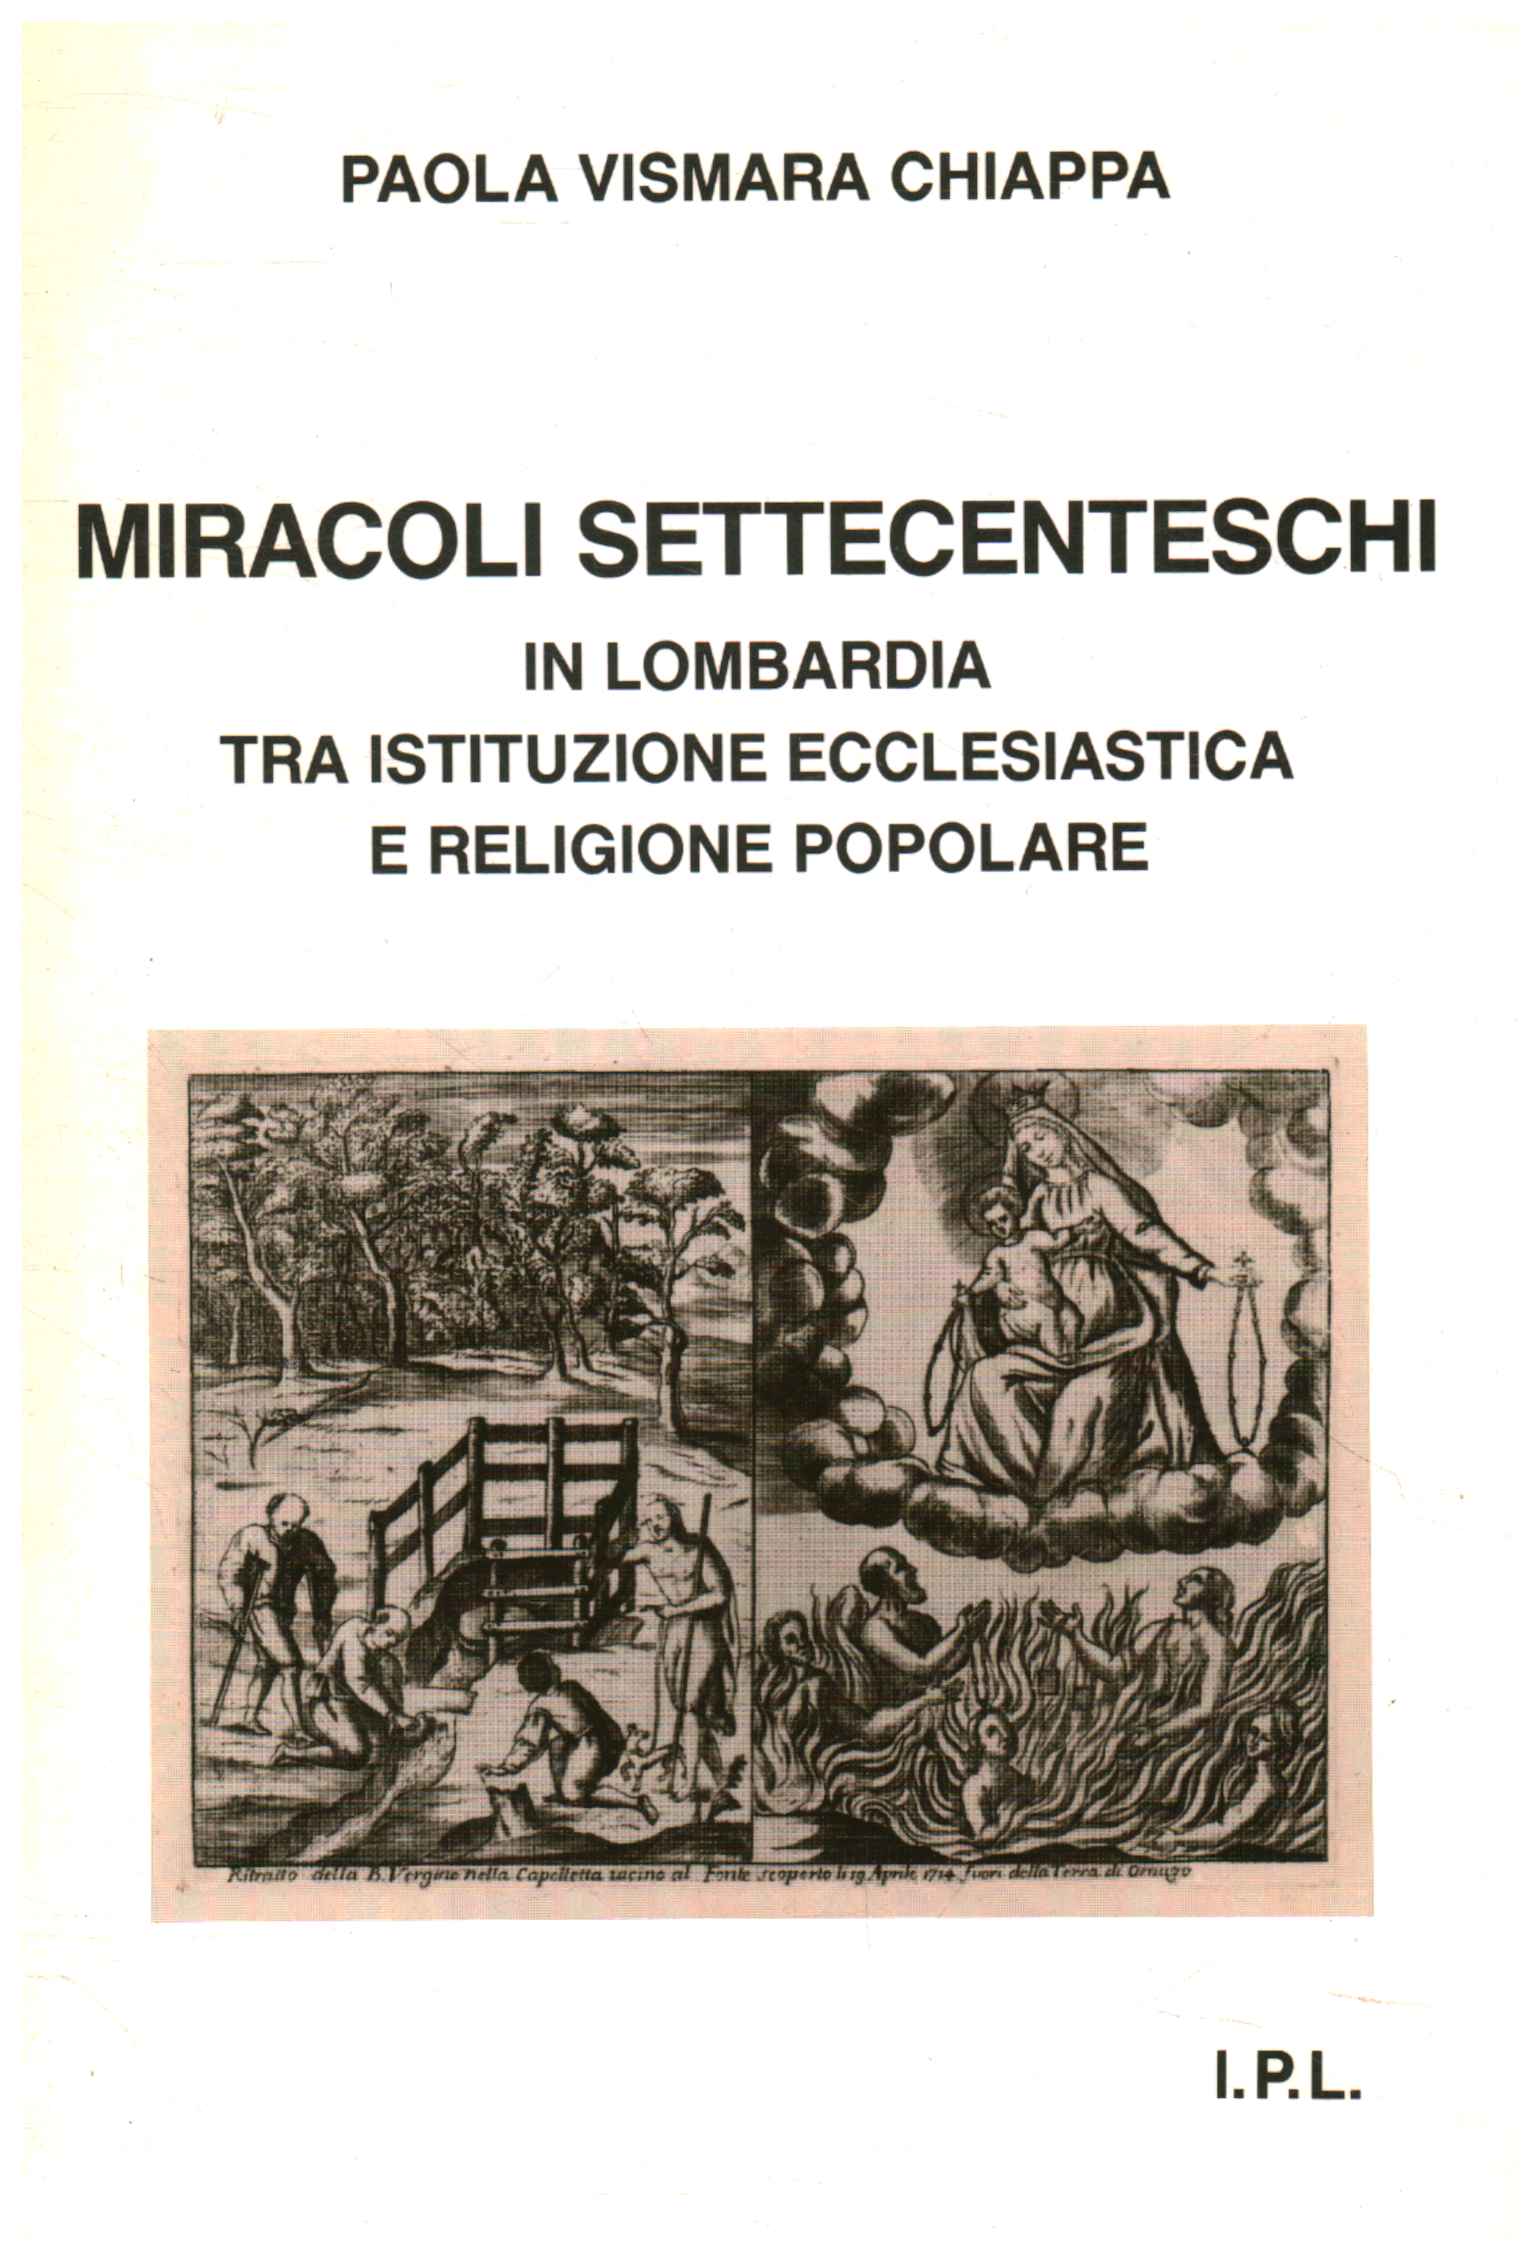 Eighteenth-century miracles